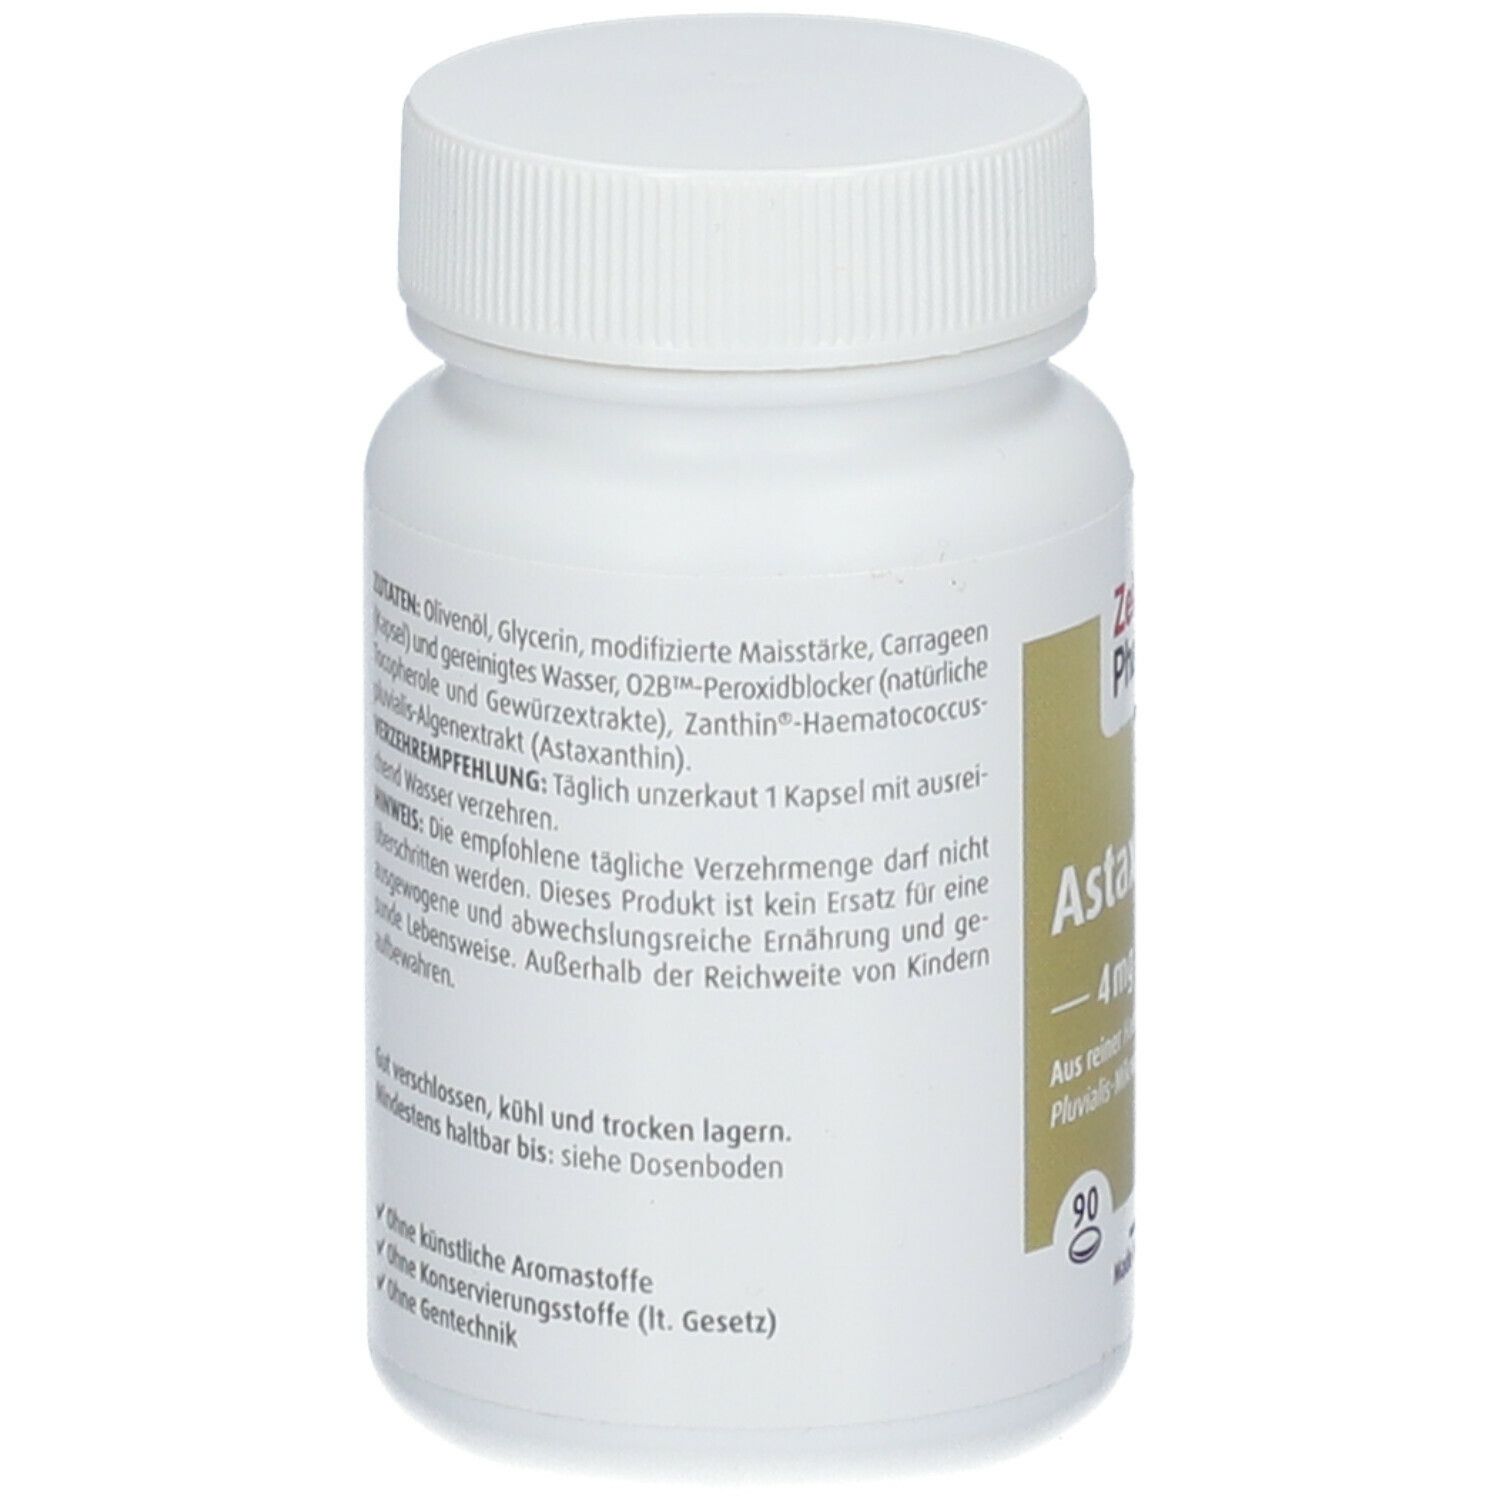 ZeinPharma® Astaxanthin Kapseln 4 mg